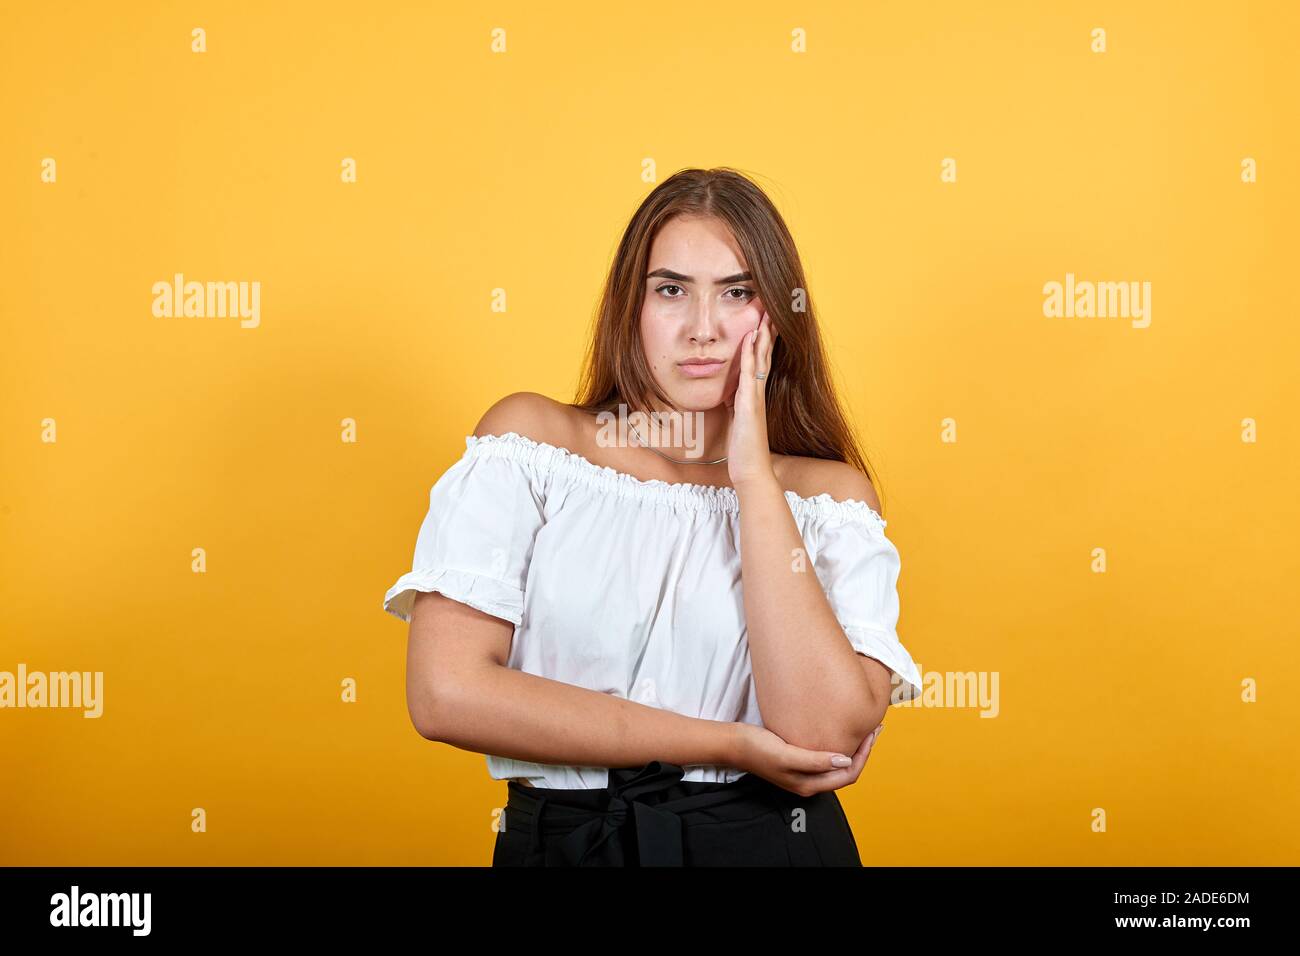 Ernsthafte junge Frau an der Kamera suchen, die Hand auf die Wange auf orange Wand Stockfoto